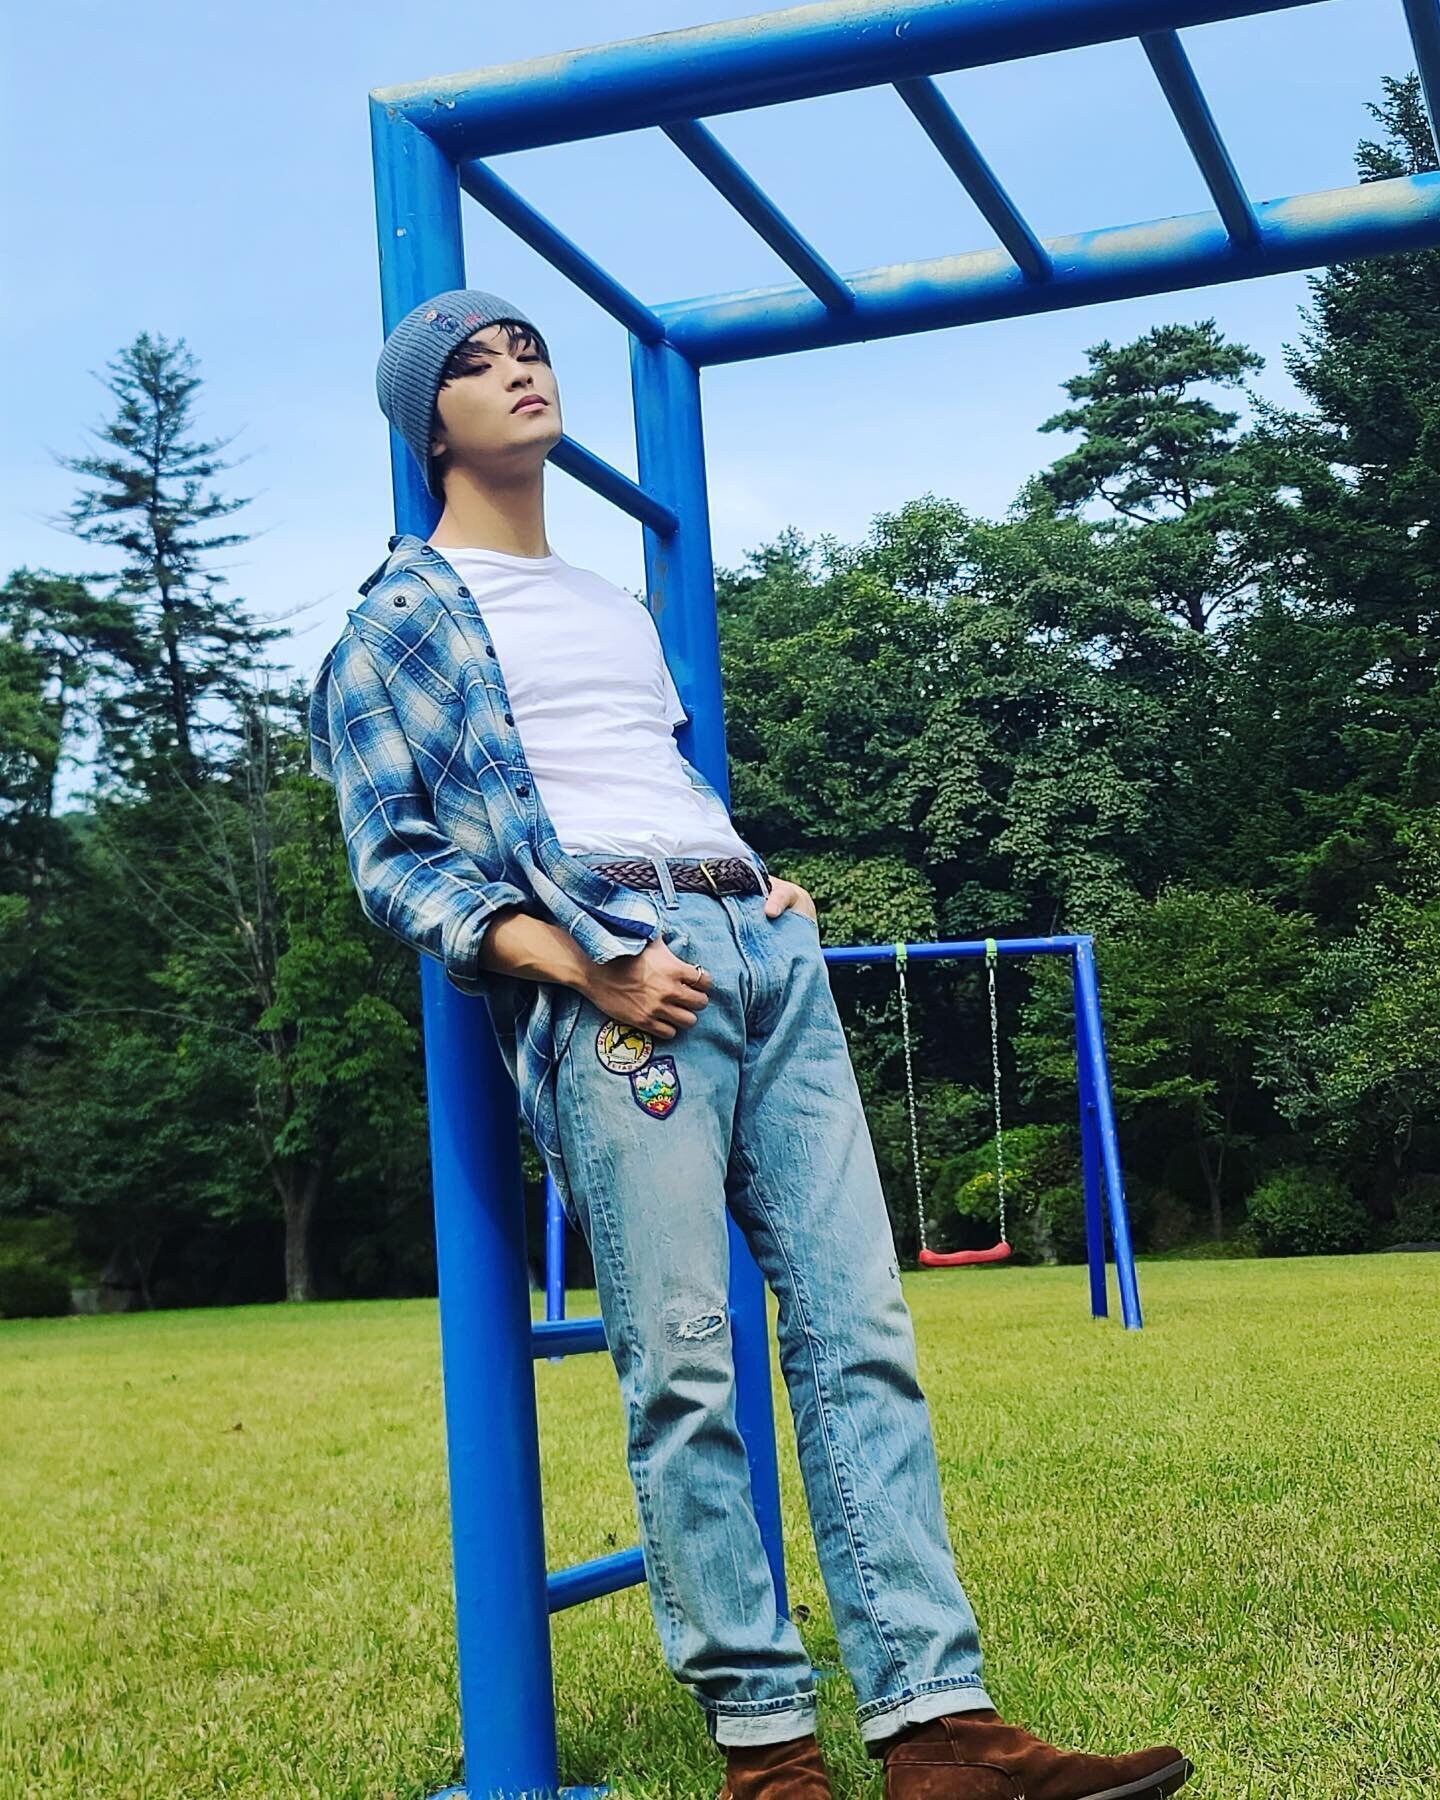 221112 NCT Mark Instagram update | kpopping